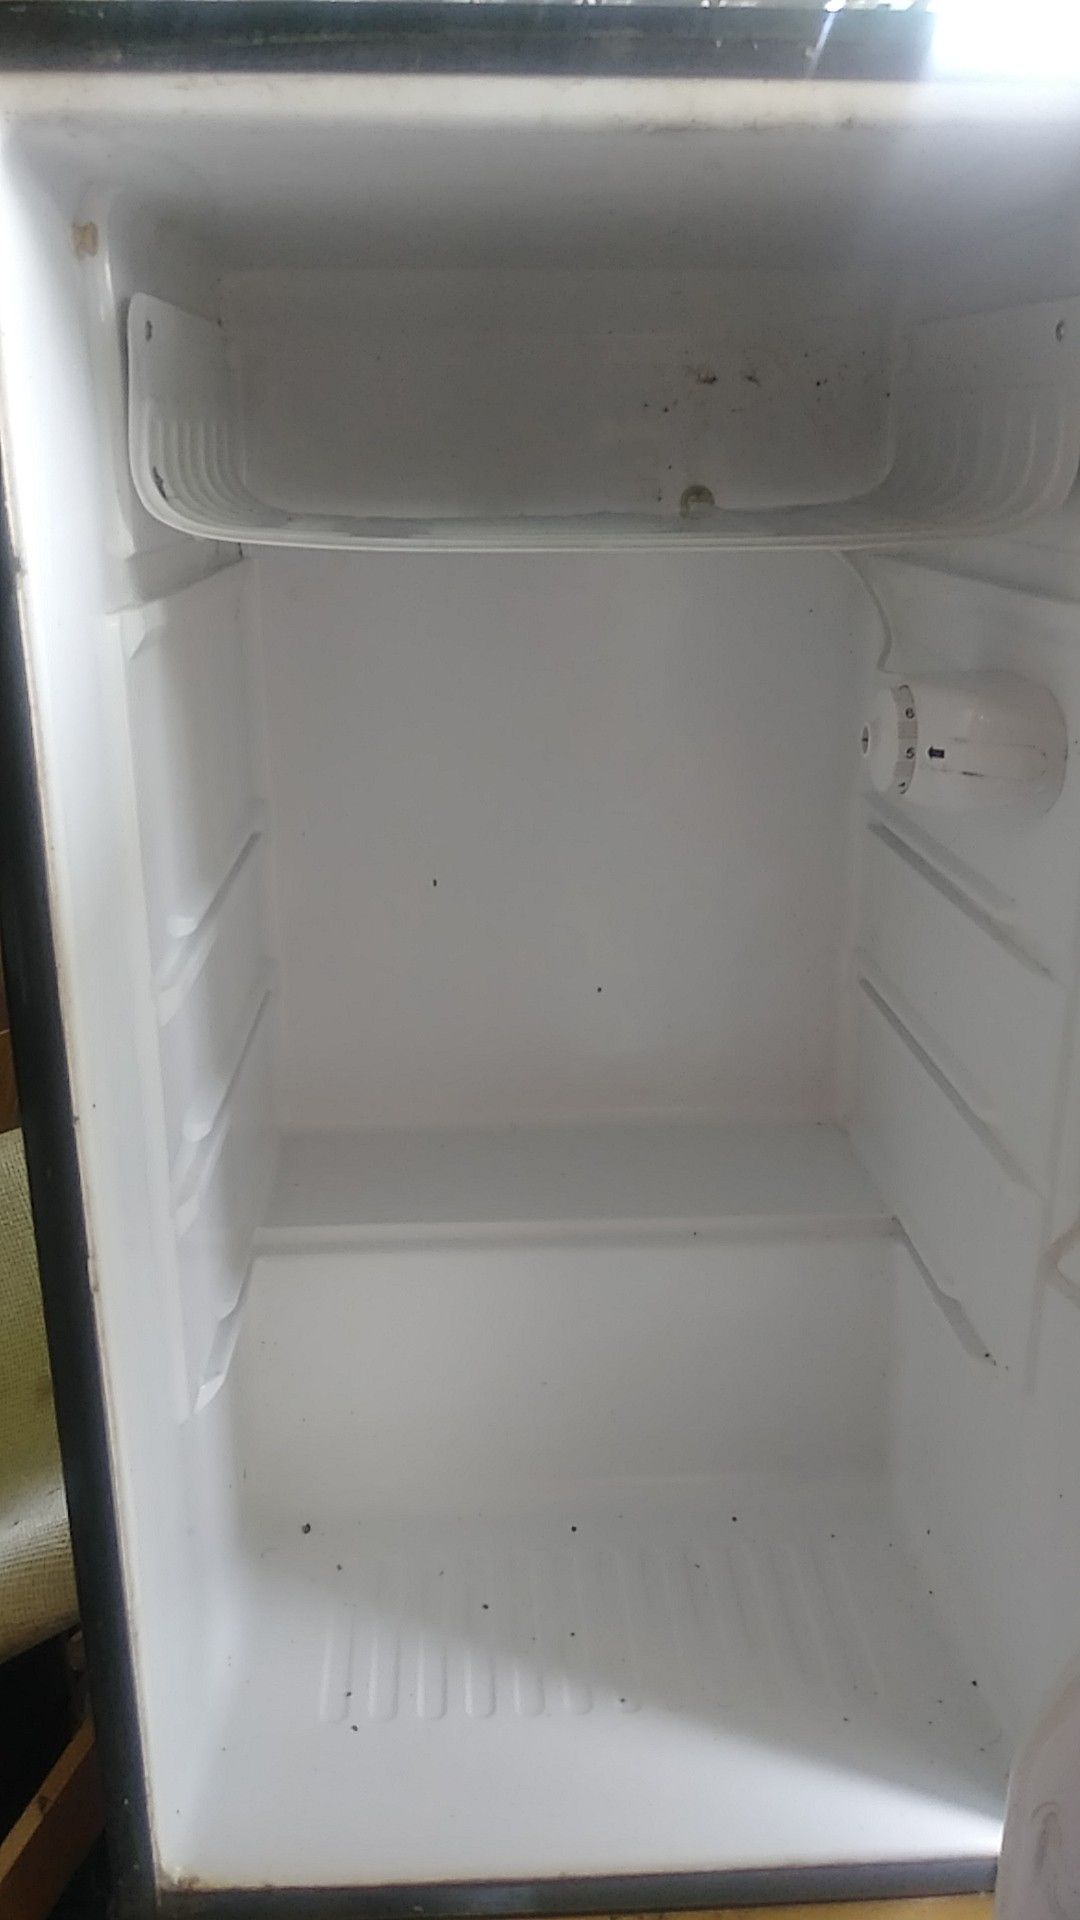 Magic chef mini refrigerator